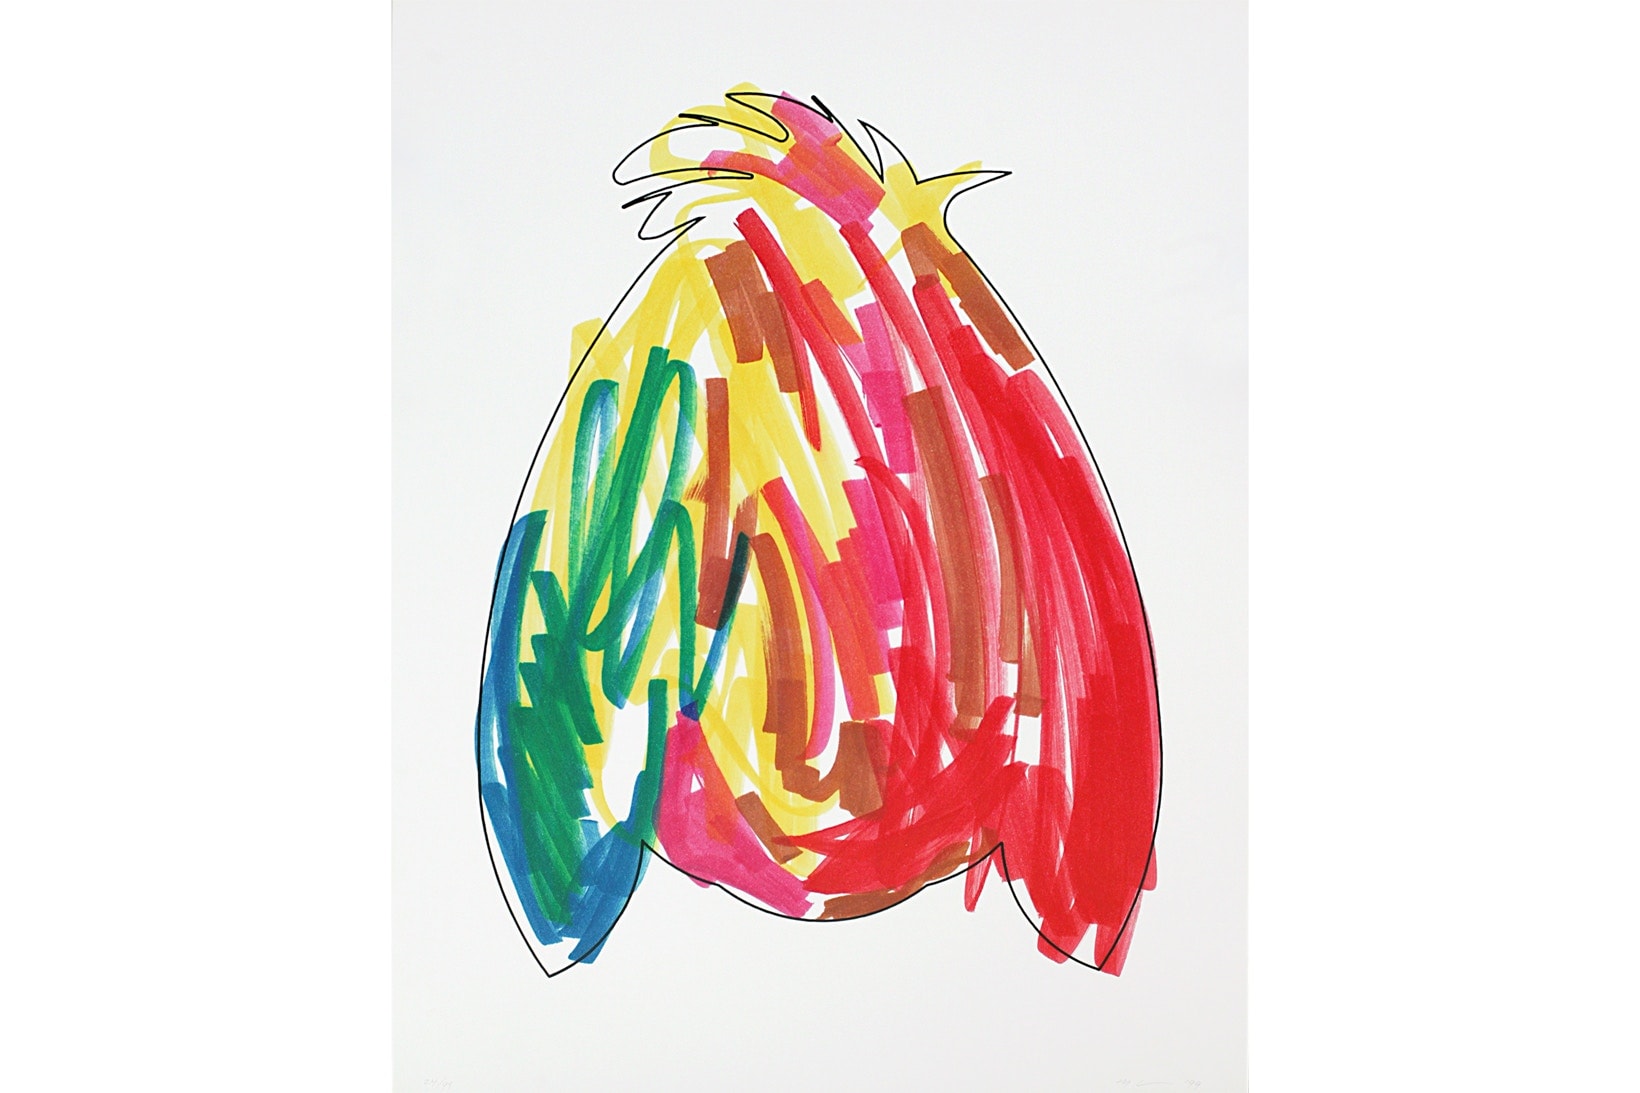 Jeff Koons 推出全新印花品及繪畫系列